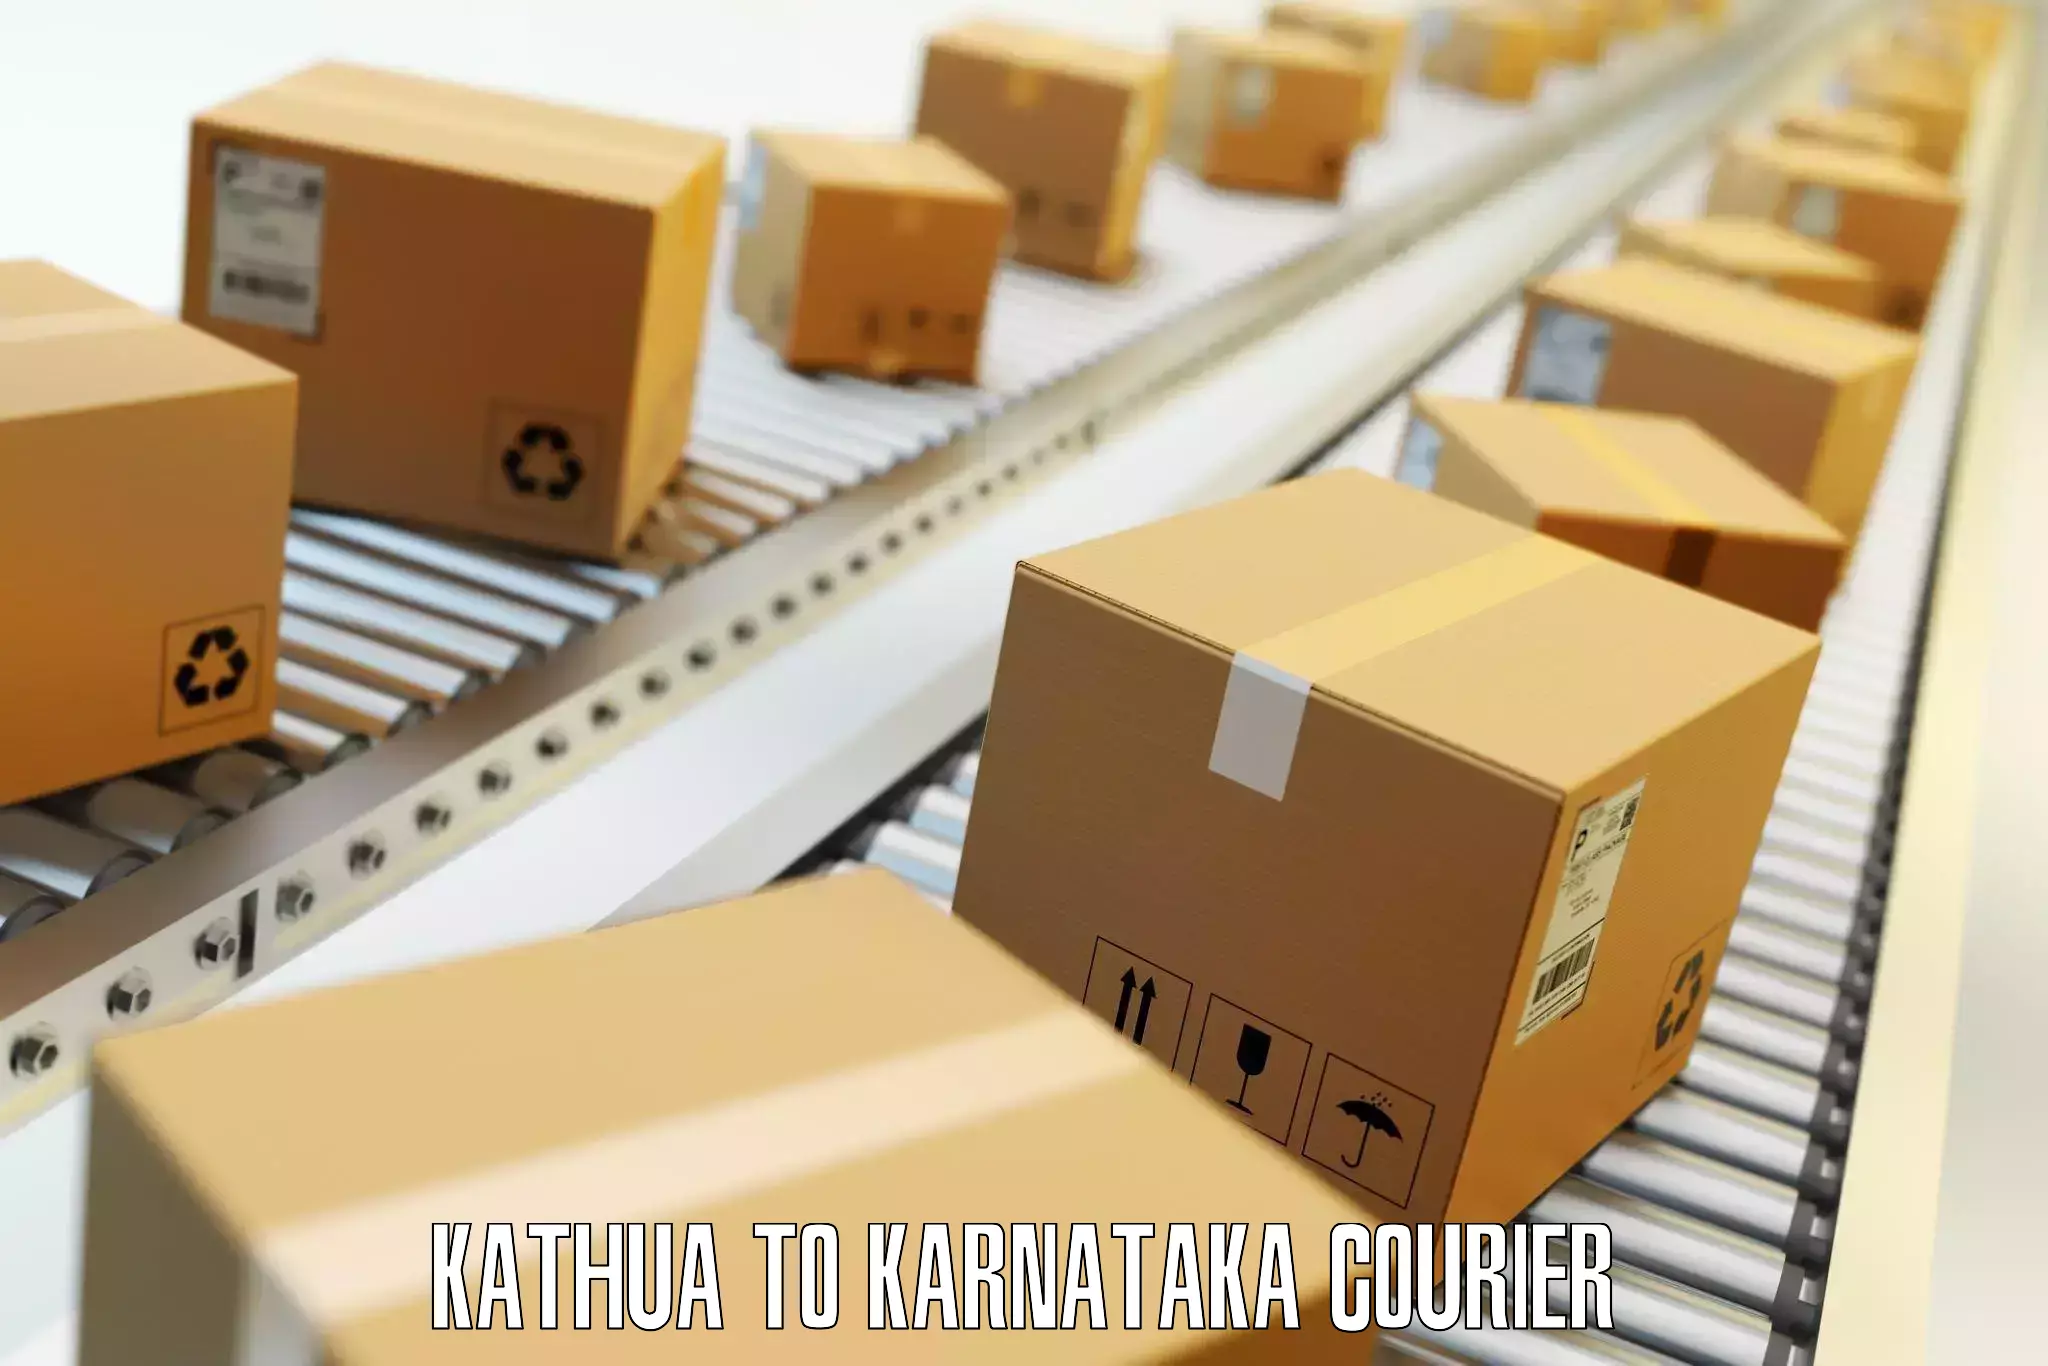 Luggage shipment specialists Kathua to Karkala